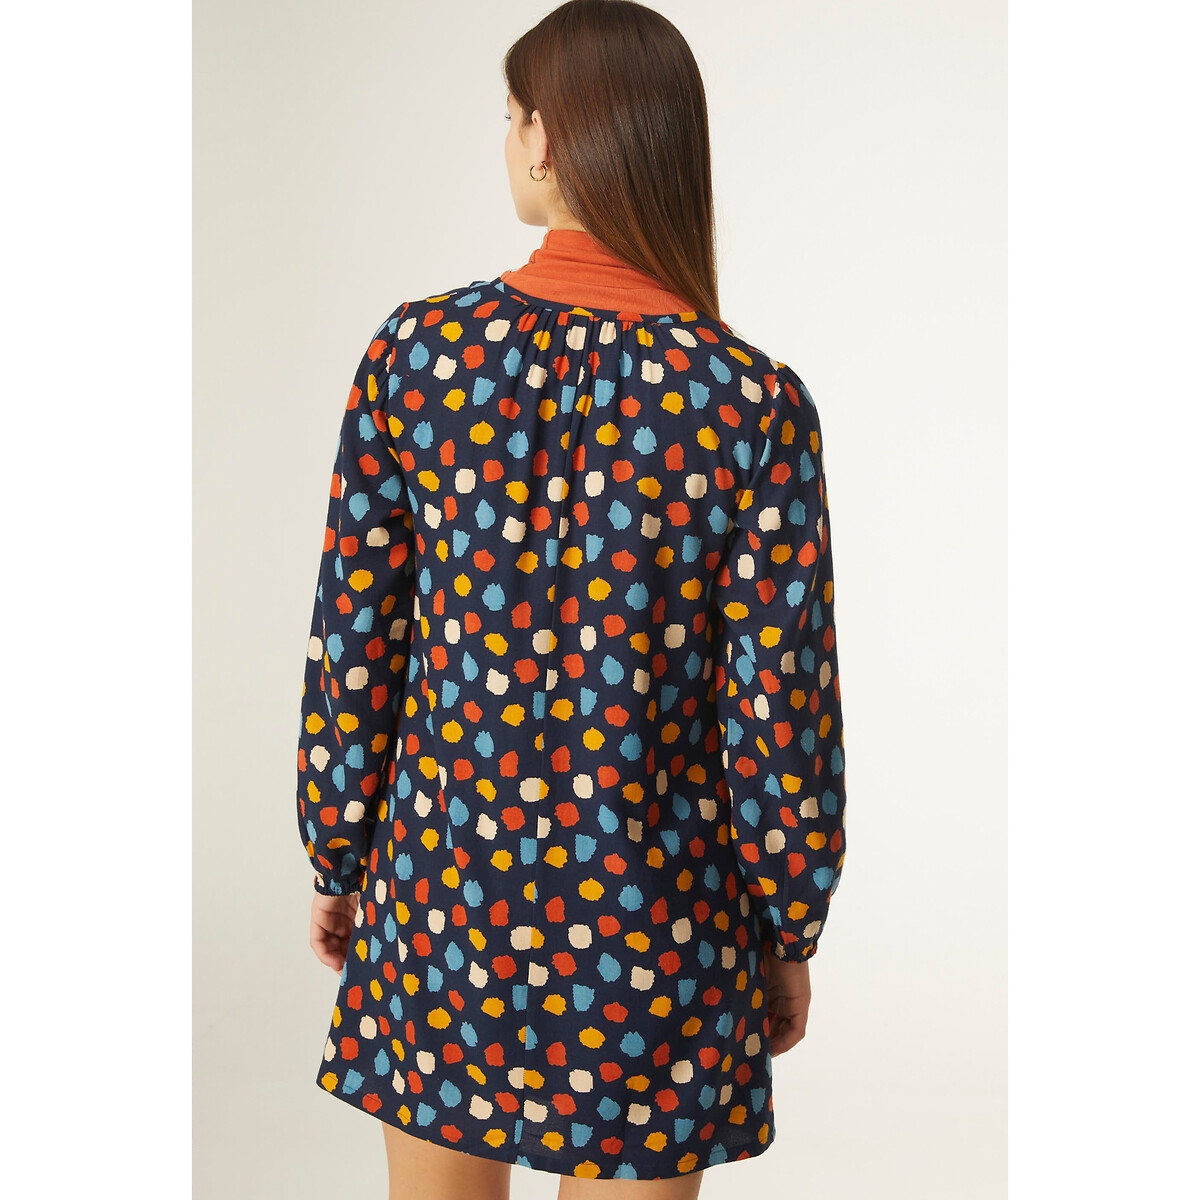 Платье COMPANIA FANTASTICA Платье С принтом в разноцветный горошек S разноцветный, размер S - фото 3